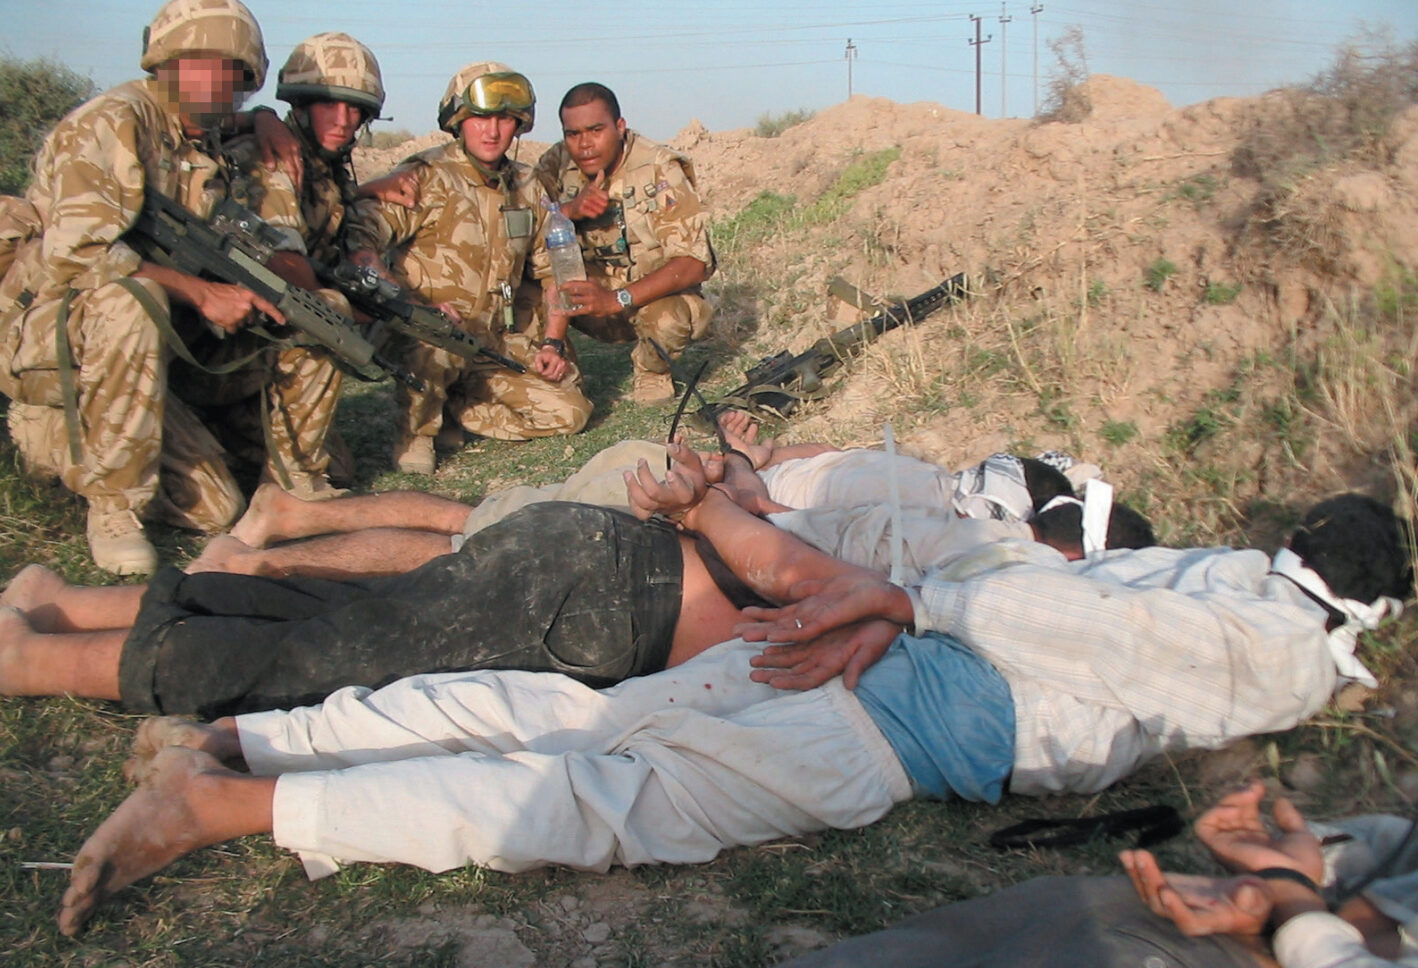 Iraqi detainees